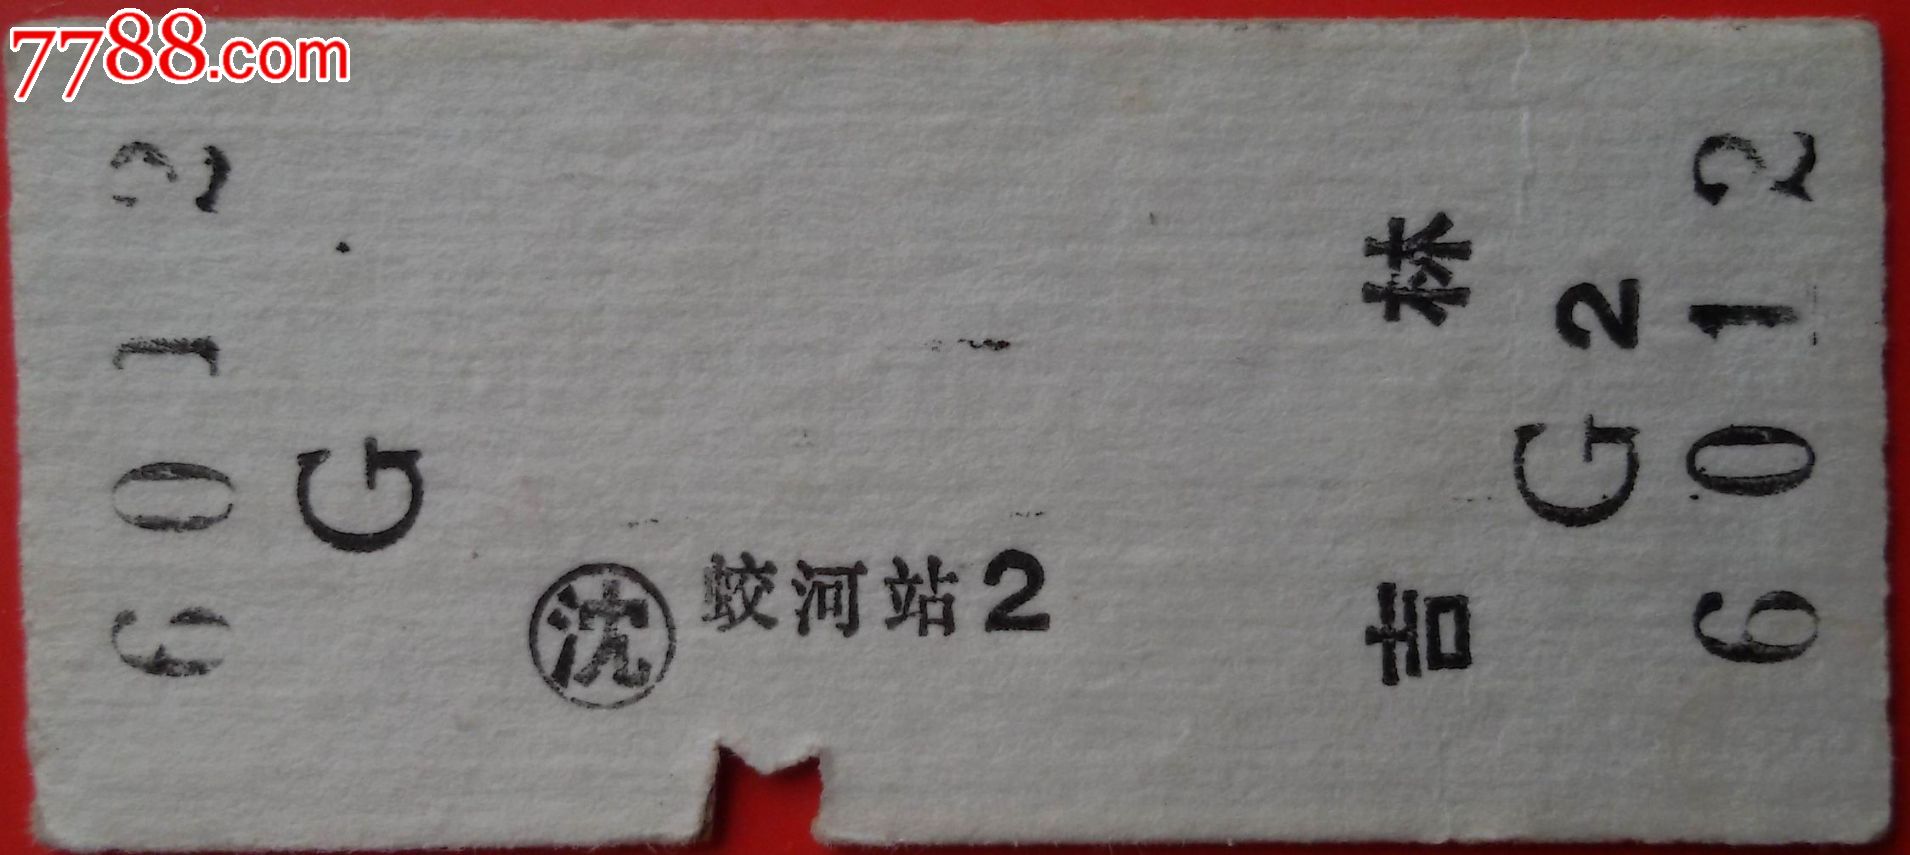 蛟河至吉林火车票-价格:3元-se32443247-火车